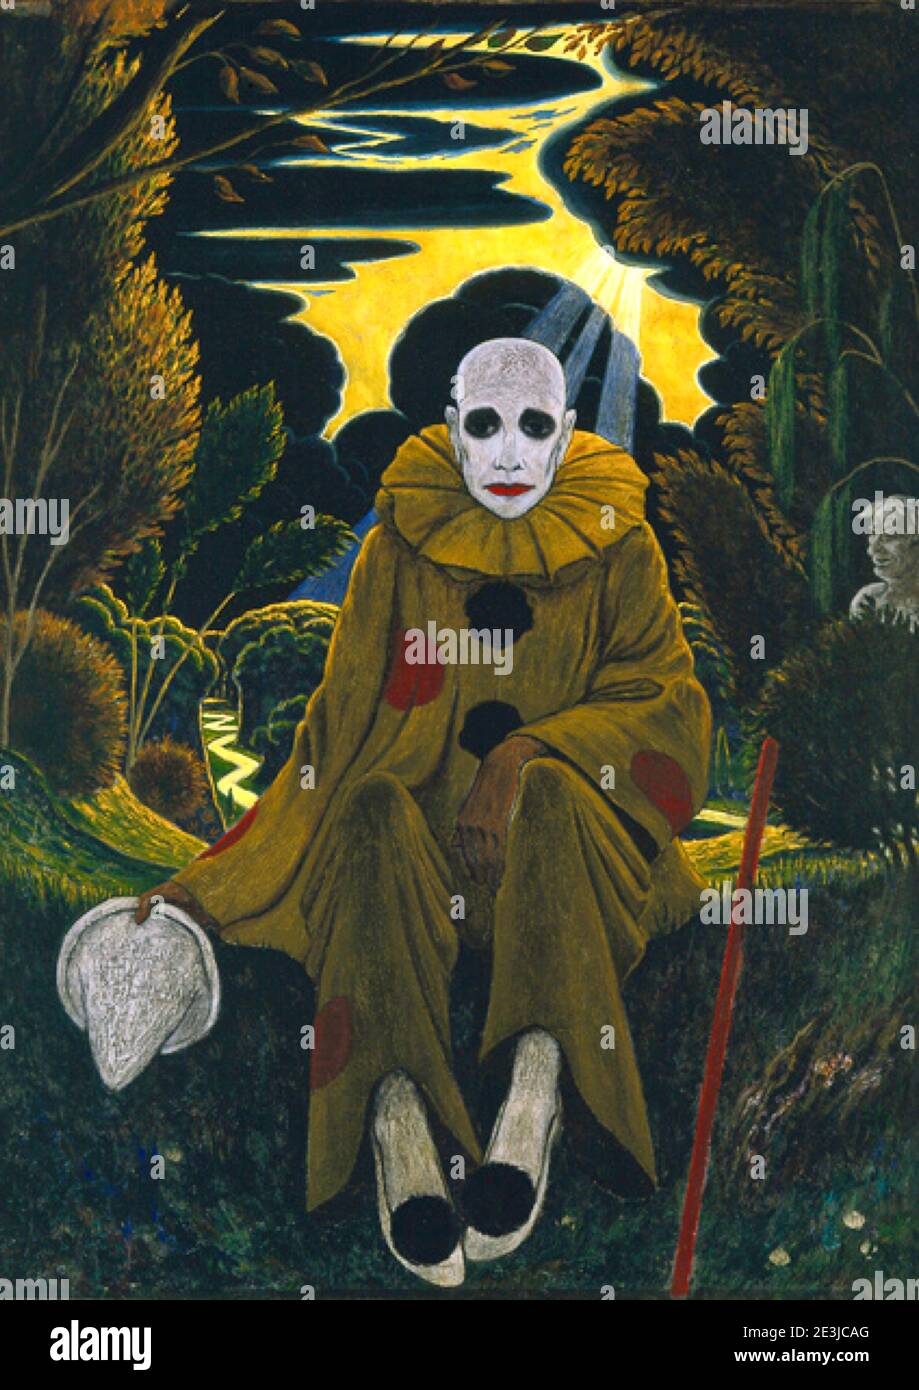 Der Clown sitzt im Wald Hut in der Hand. Die Sonne scheint auf ihn, aber er ist nicht glücklich. Das Kunstwerk von Edward Middleton Manigault aus dem Jahr 1910 heißt Clown. Stockfoto